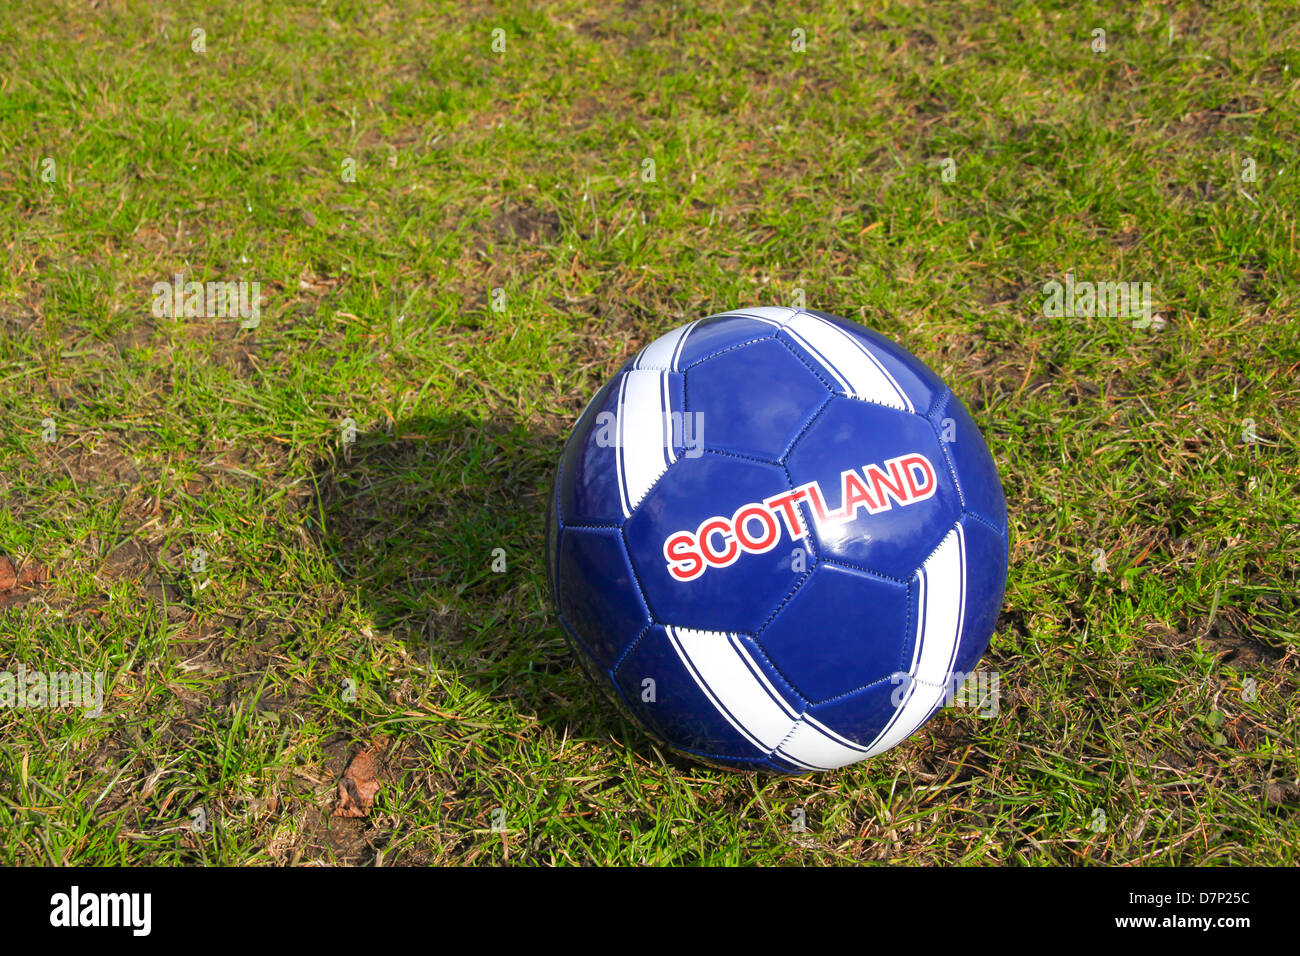 La Scozia in pelle con marchio calcio in erba Foto Stock